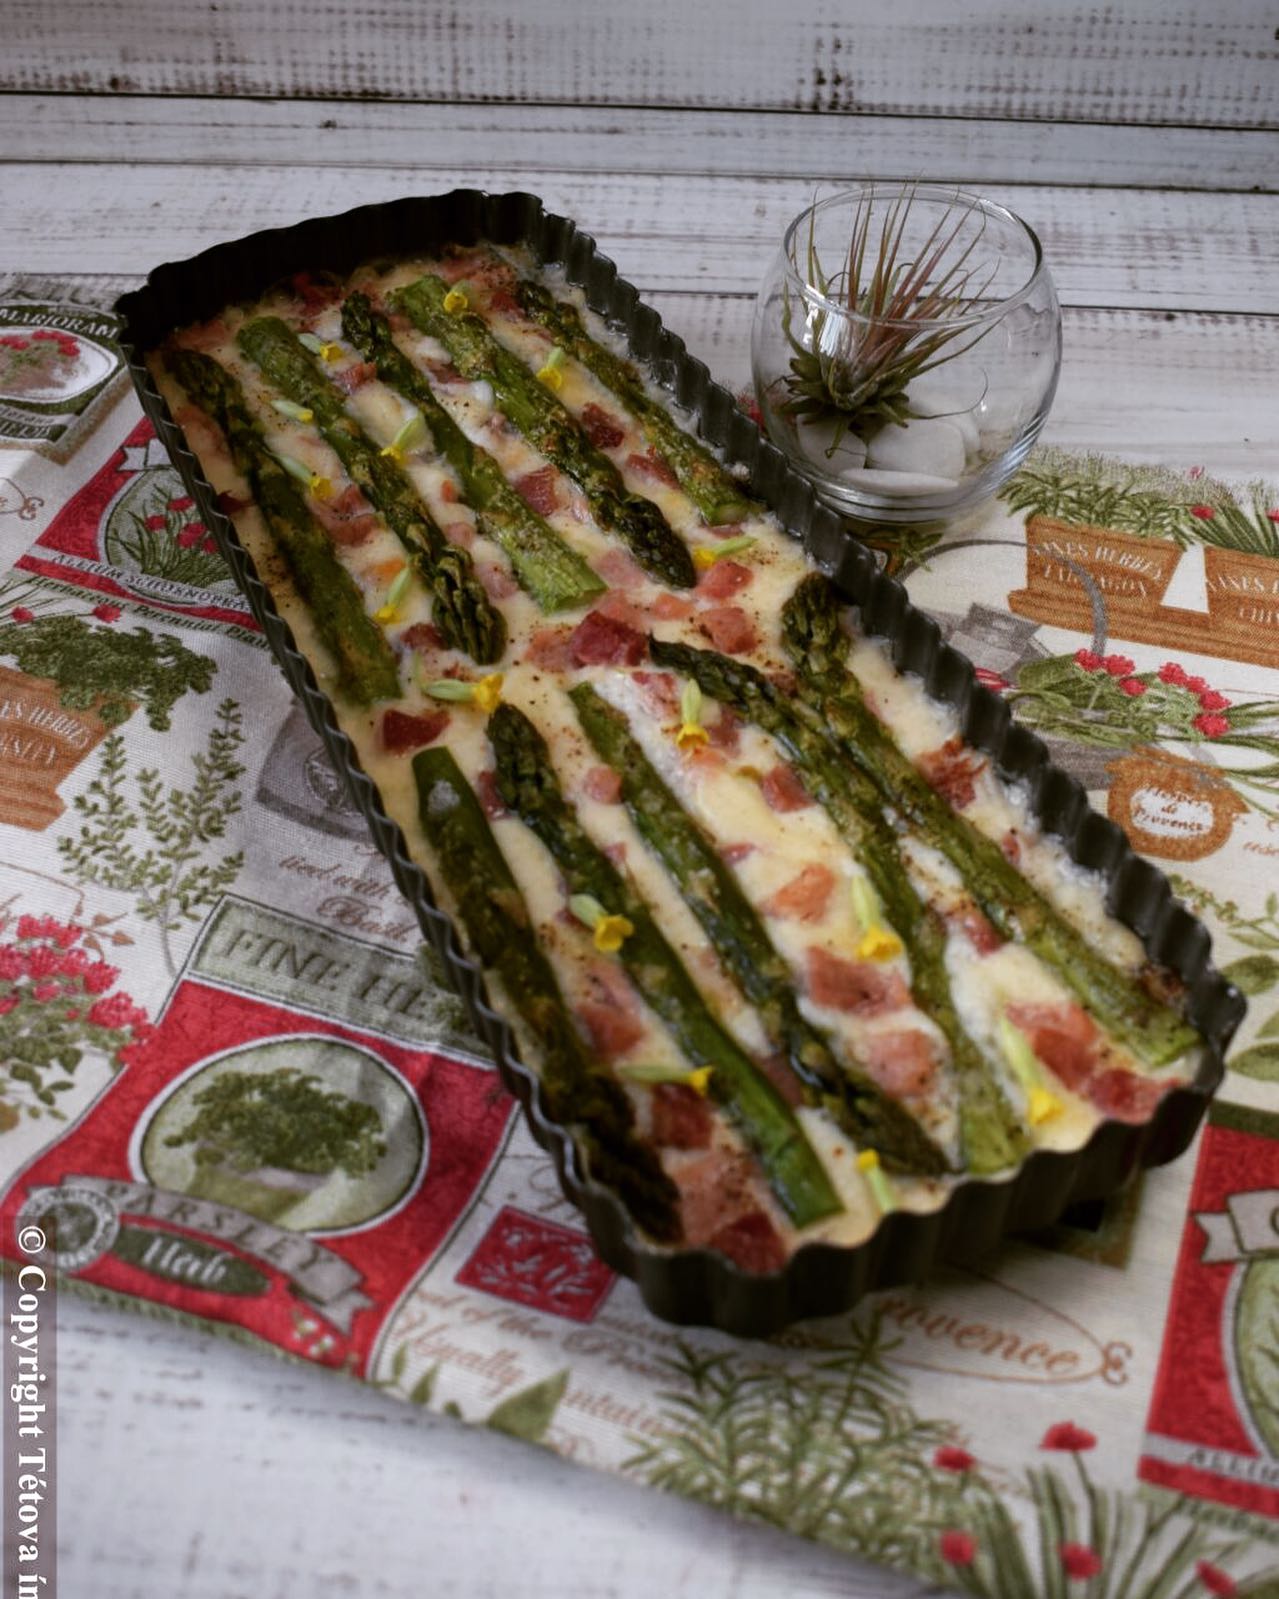 Spárga gratin sonkával #asparagus #gratin #ham #tetovainyenc #mutimiteszel #mutimiteszel_fitt #foodblogger #foodphotography #foodporn #foodie #foodinsta #mik_gasztro #spárga